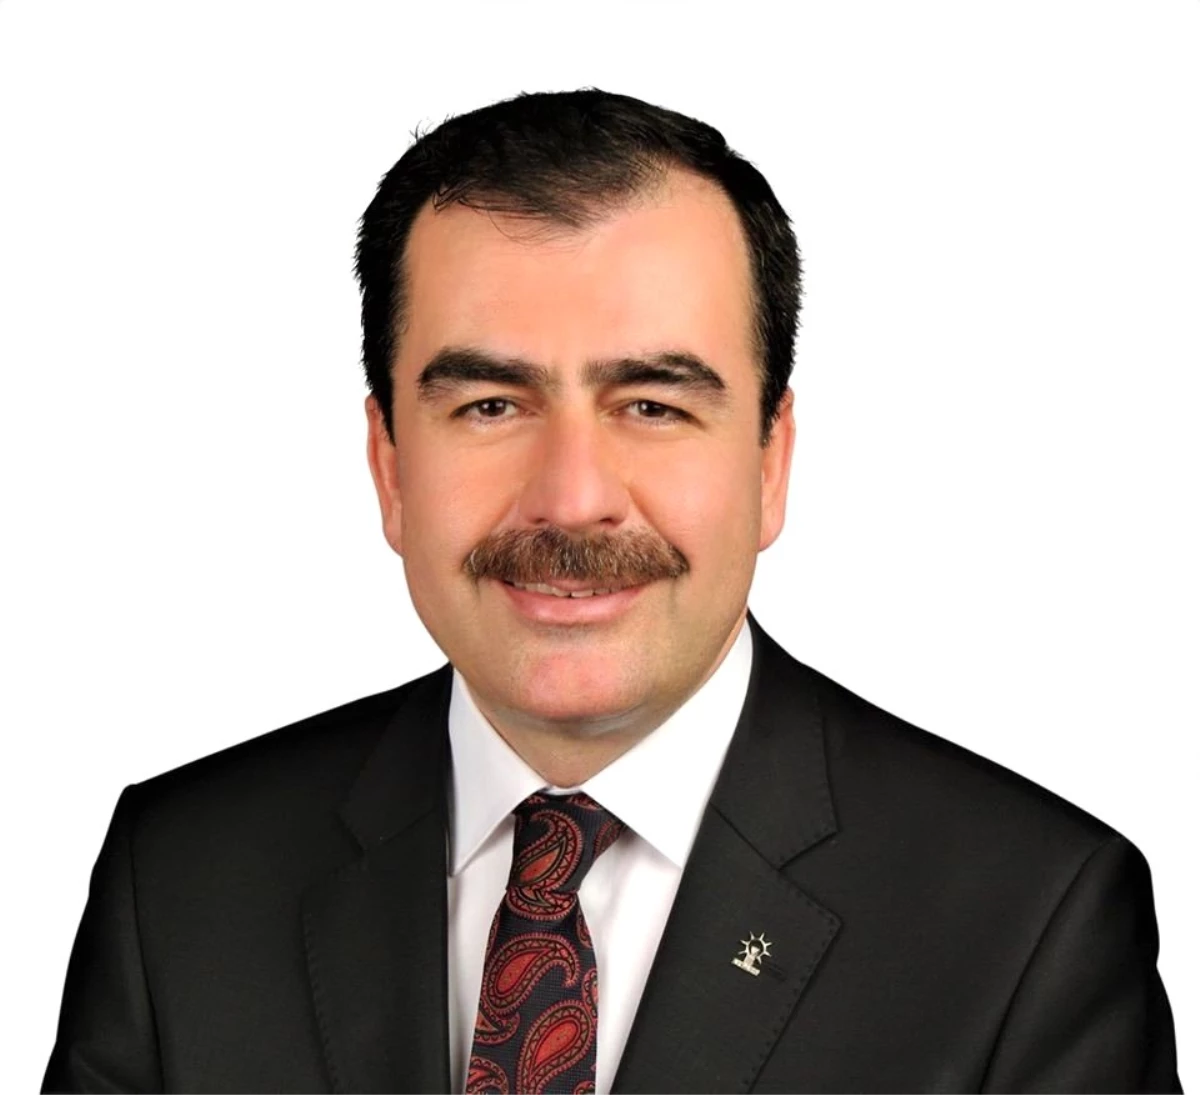 AK Partili Erdem; "Türkiye 19 yılda çok gelişti ve büyüdü"